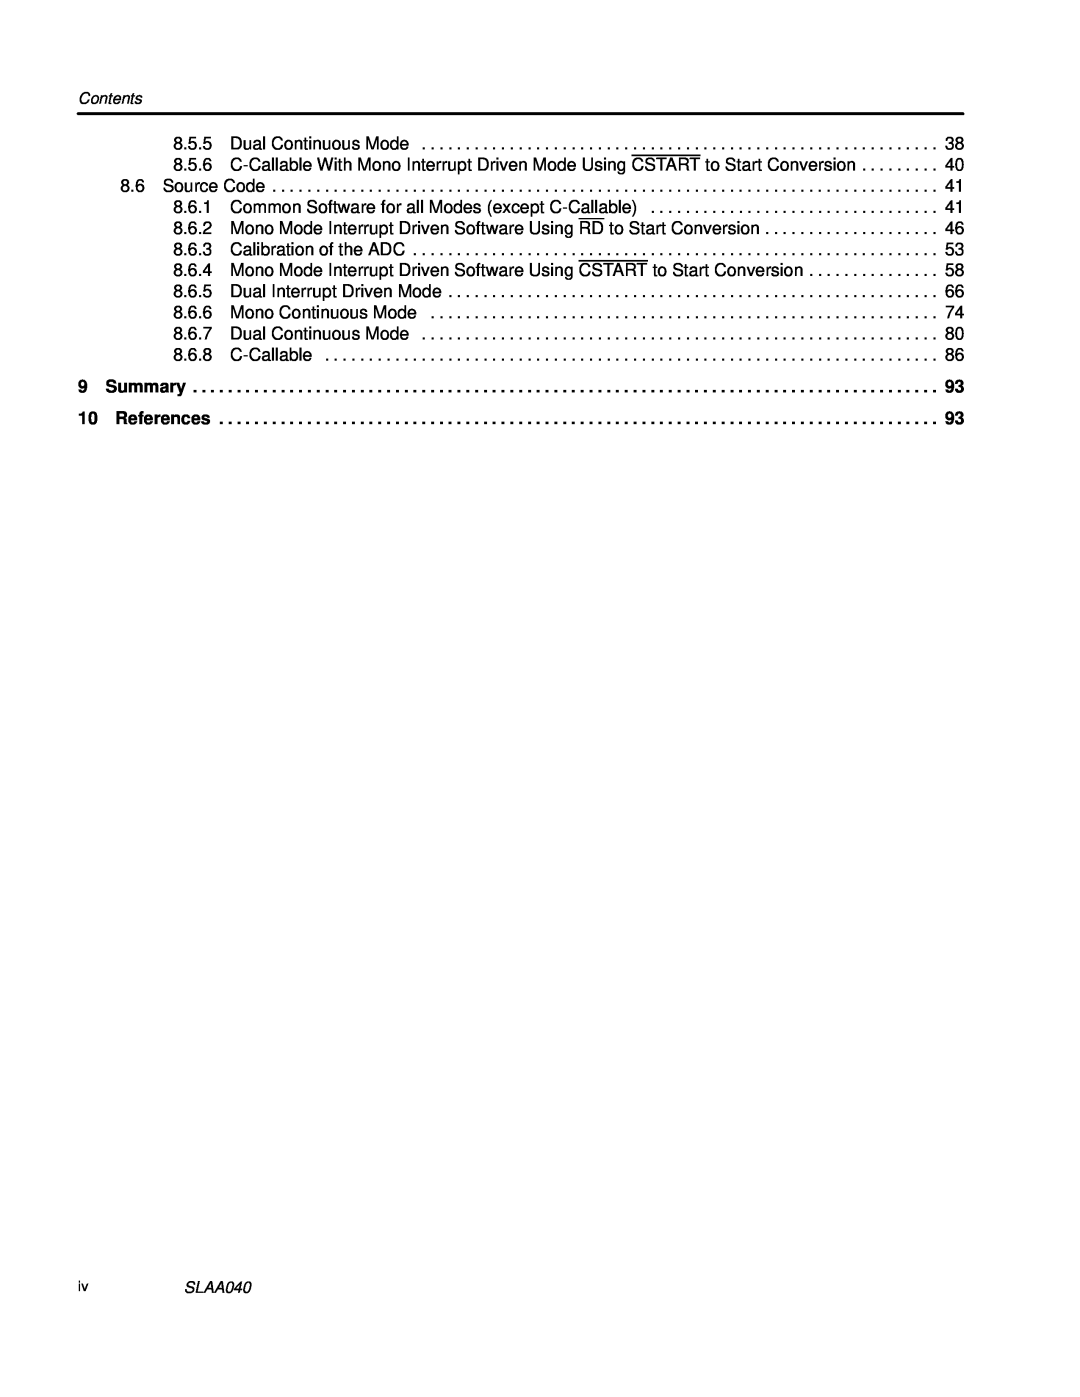 Texas Instruments TLV1562 manual 8.5.5 